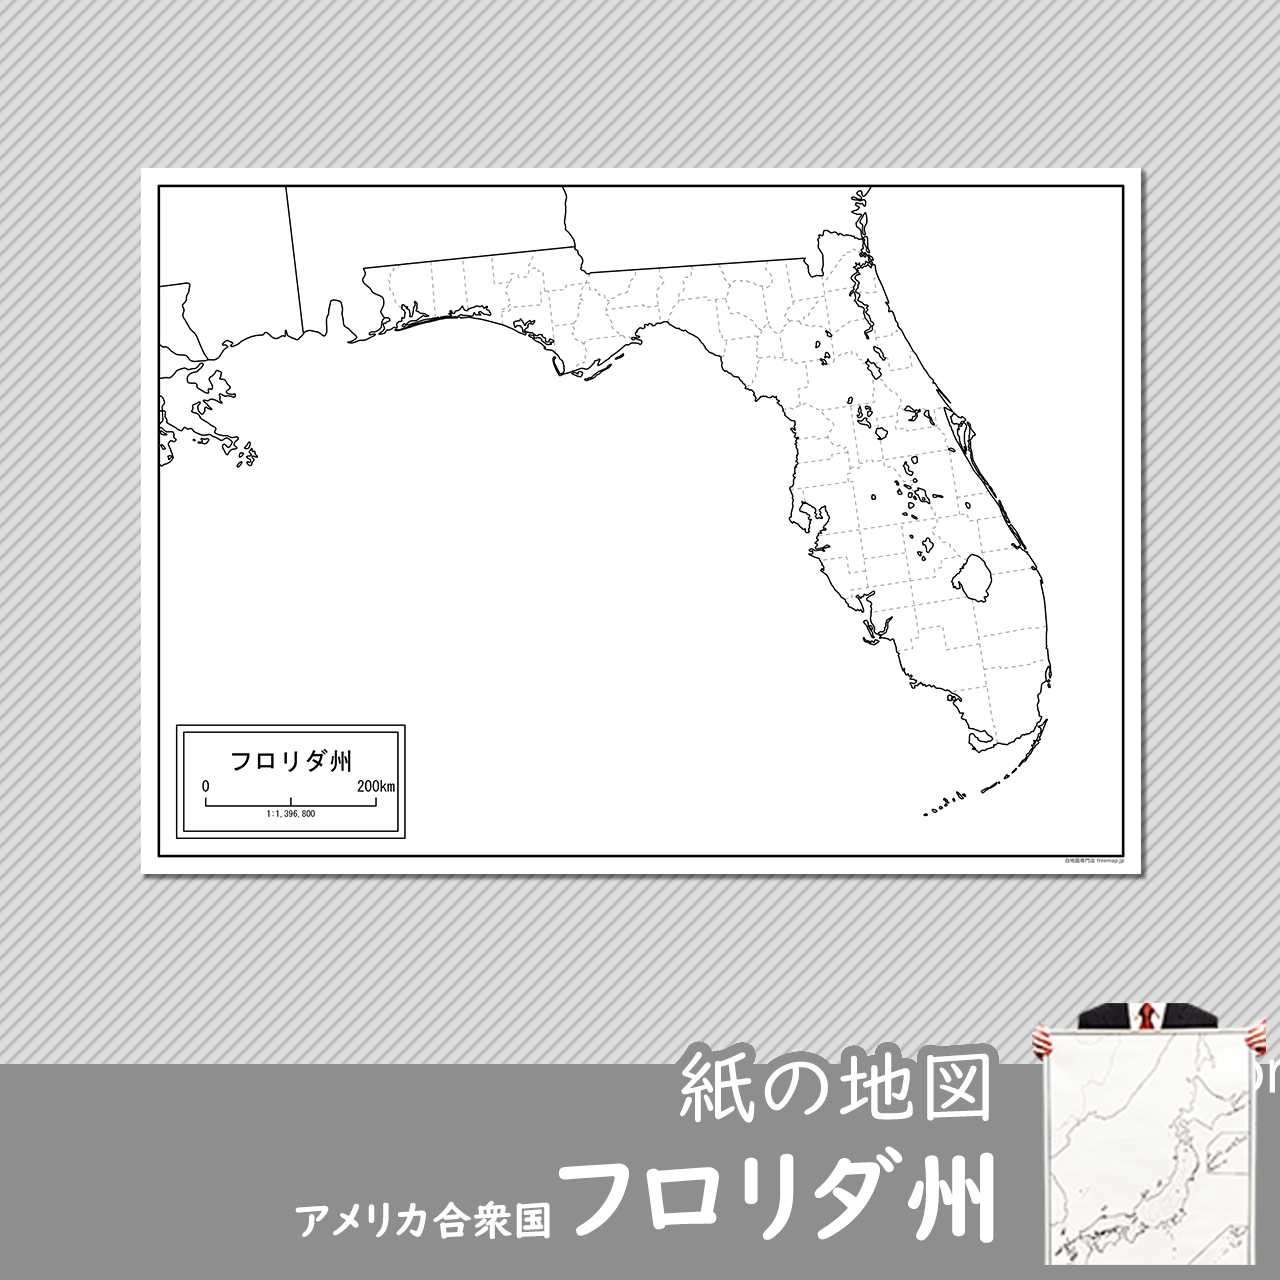 フロリダ州の紙の白地図のサムネイル